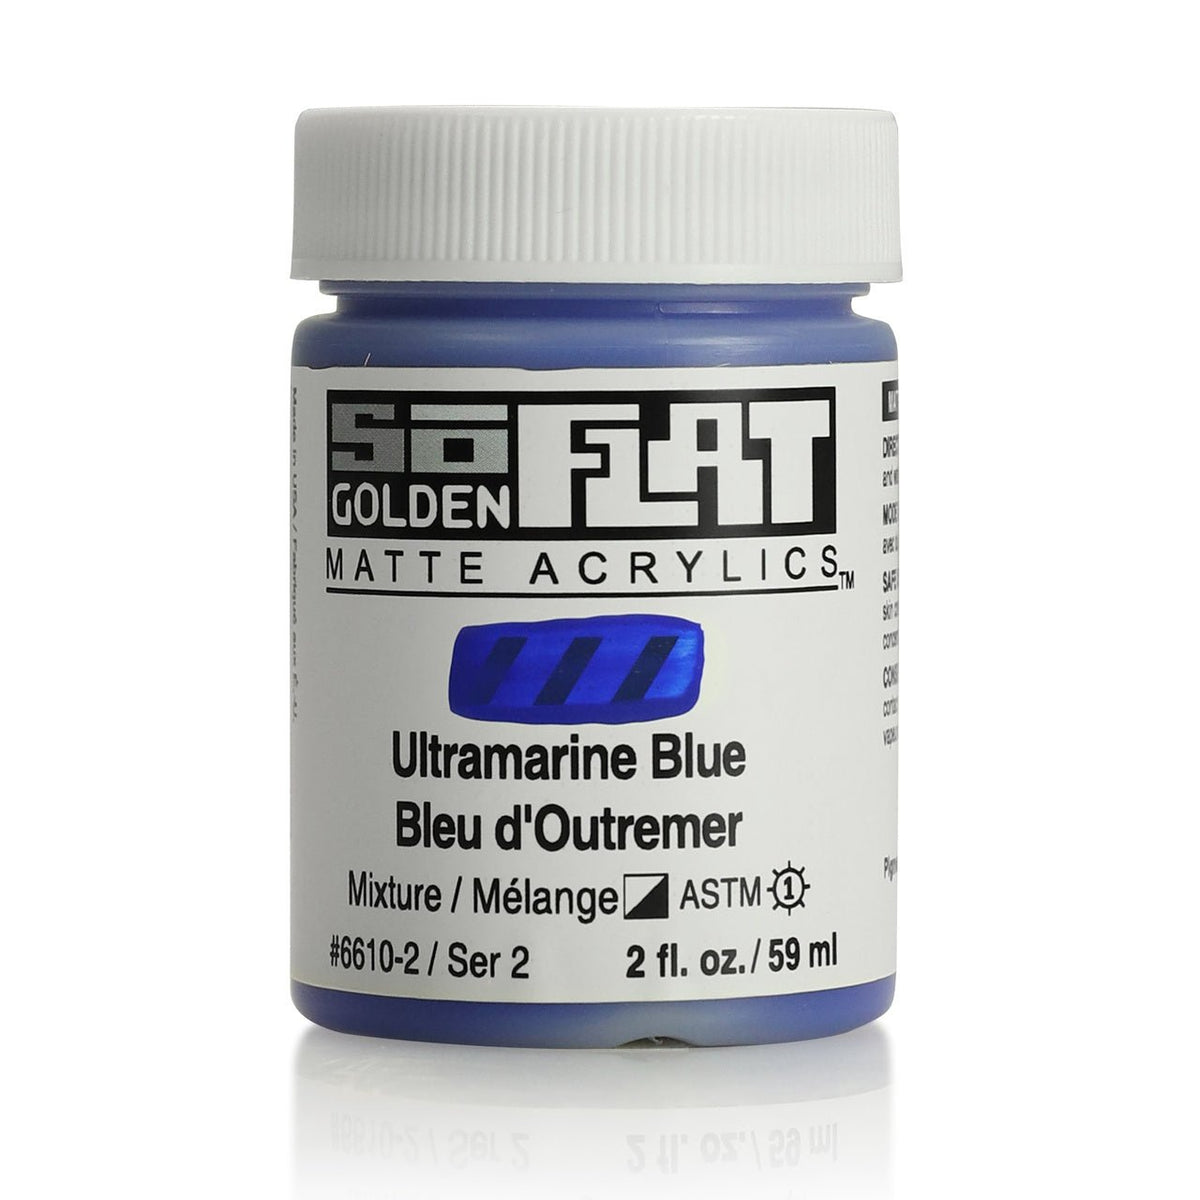 Golden SoFlat Matte Acrylic Paint - Ultramarine Blue 2 oz jar - merriartist.com